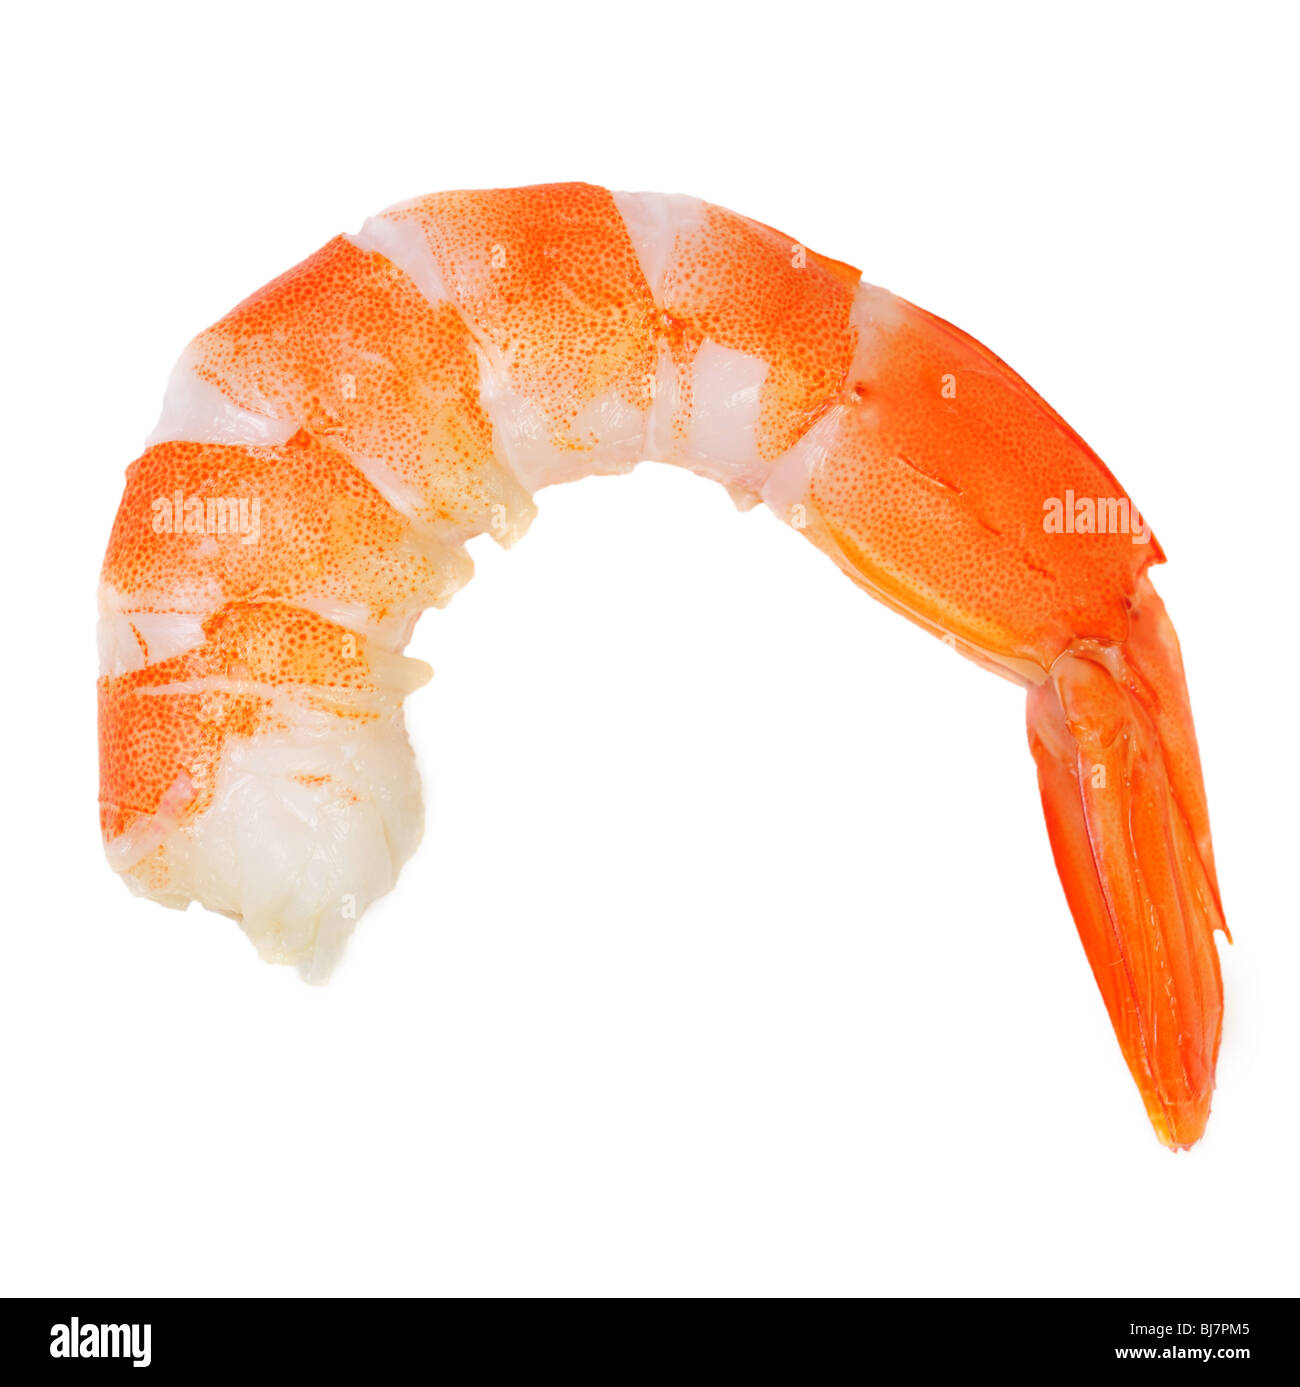 Single prawn tail isolated on white Stock Photo